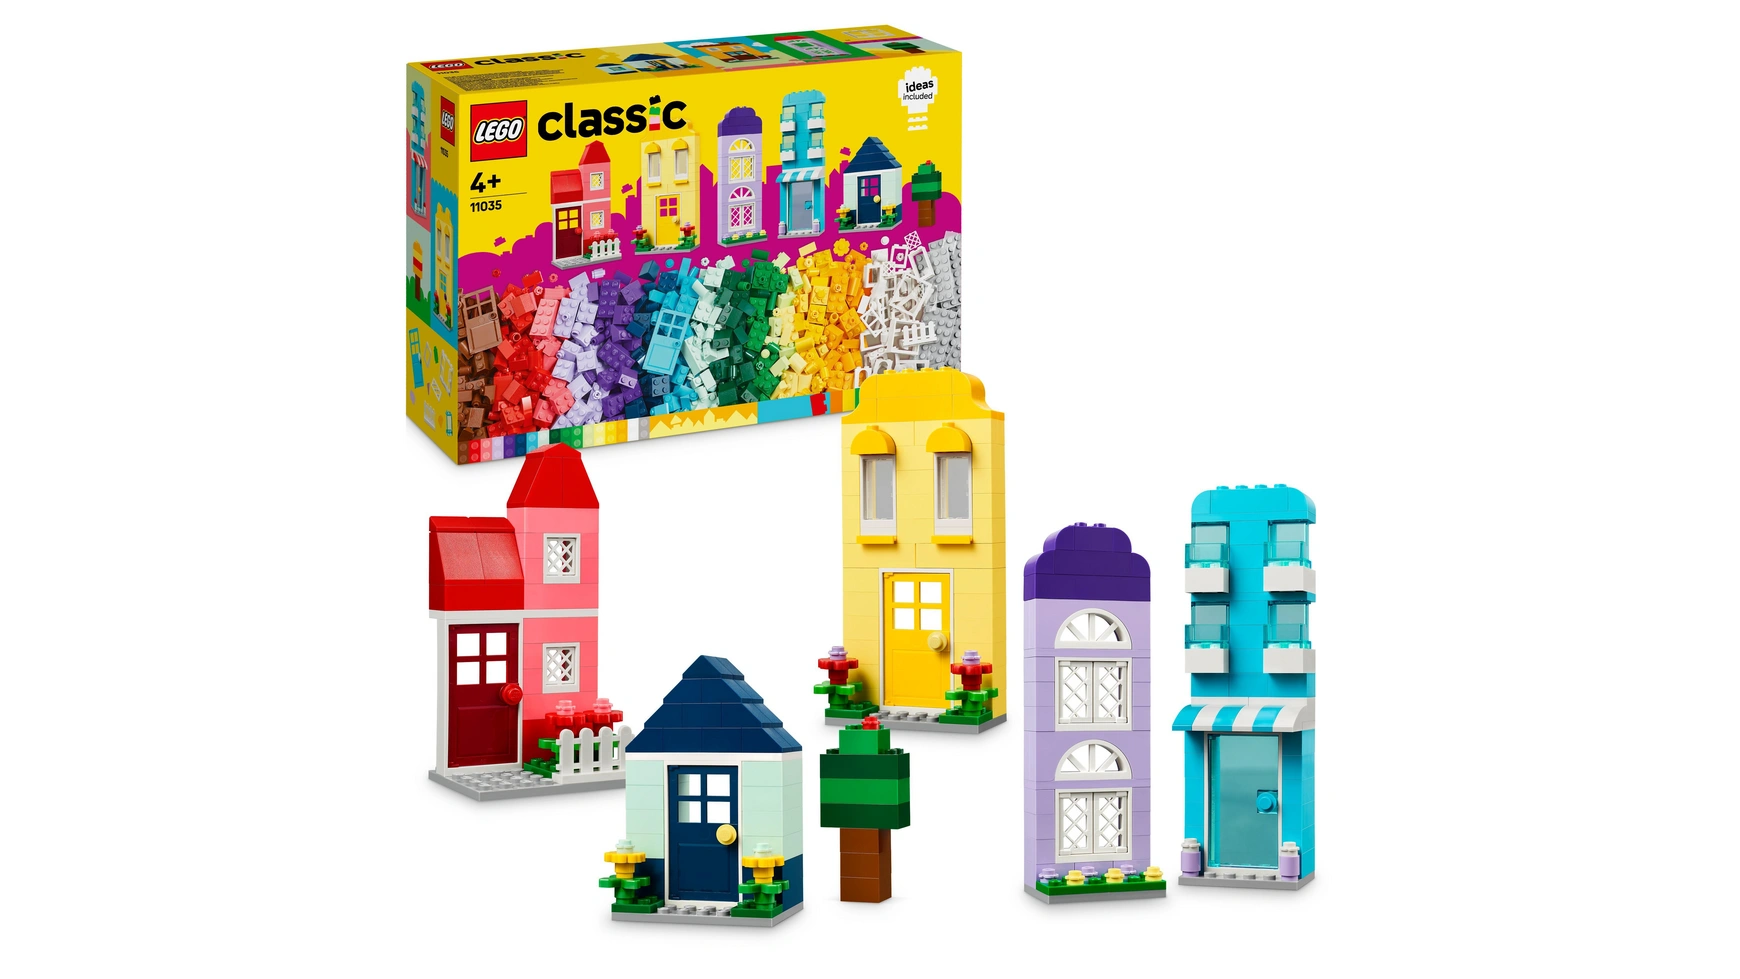 Lego Classic Творческие дома, набор строительных блоков с аксессуарами из 4 предметов gan monster go twist волшебный пазл змея антистресс монстерго милое создание искусства полный набор из 24 строительных блоков в сборе